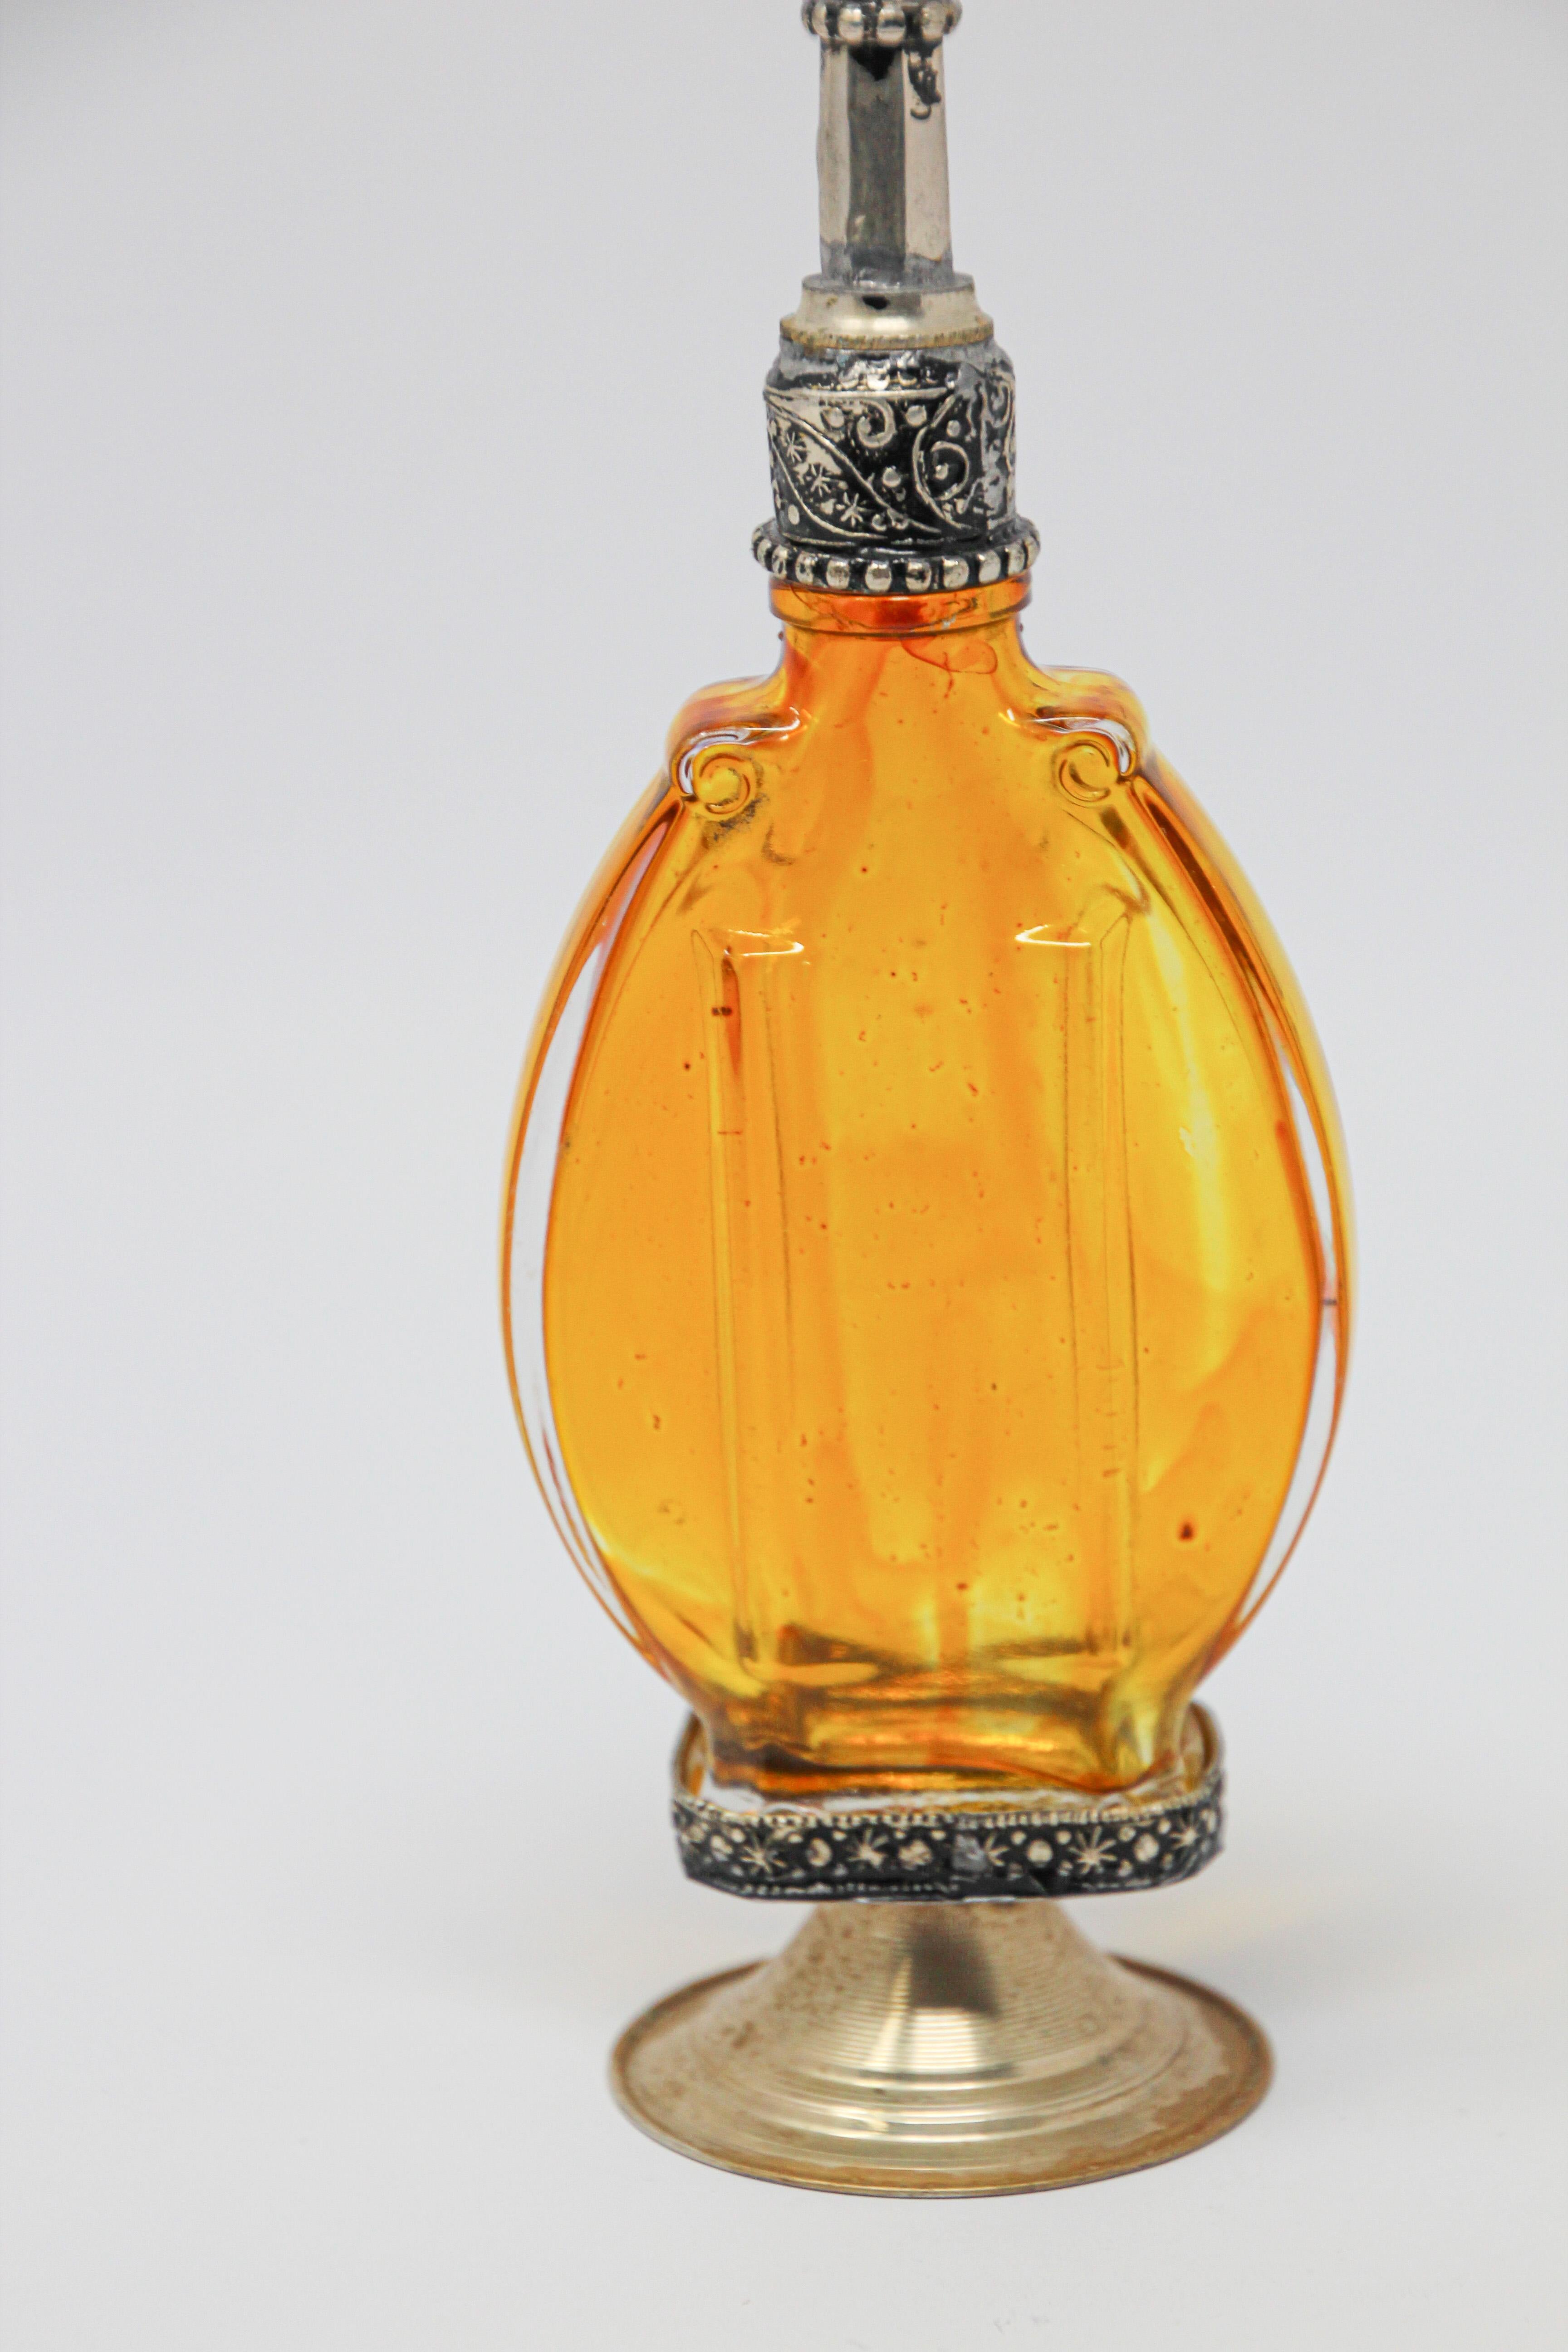 Handgefertigter marokkanischer Parfümflakon aus bernsteinfarbenem Glas oder Rosenwasserzerstäuber mit erhabenem, versilbertem Blumendesign aus Metall über bernsteinfarbenem Glas.
Der Pressglasflakon im Art Déco- und Jugendstil hat eine ovale Form